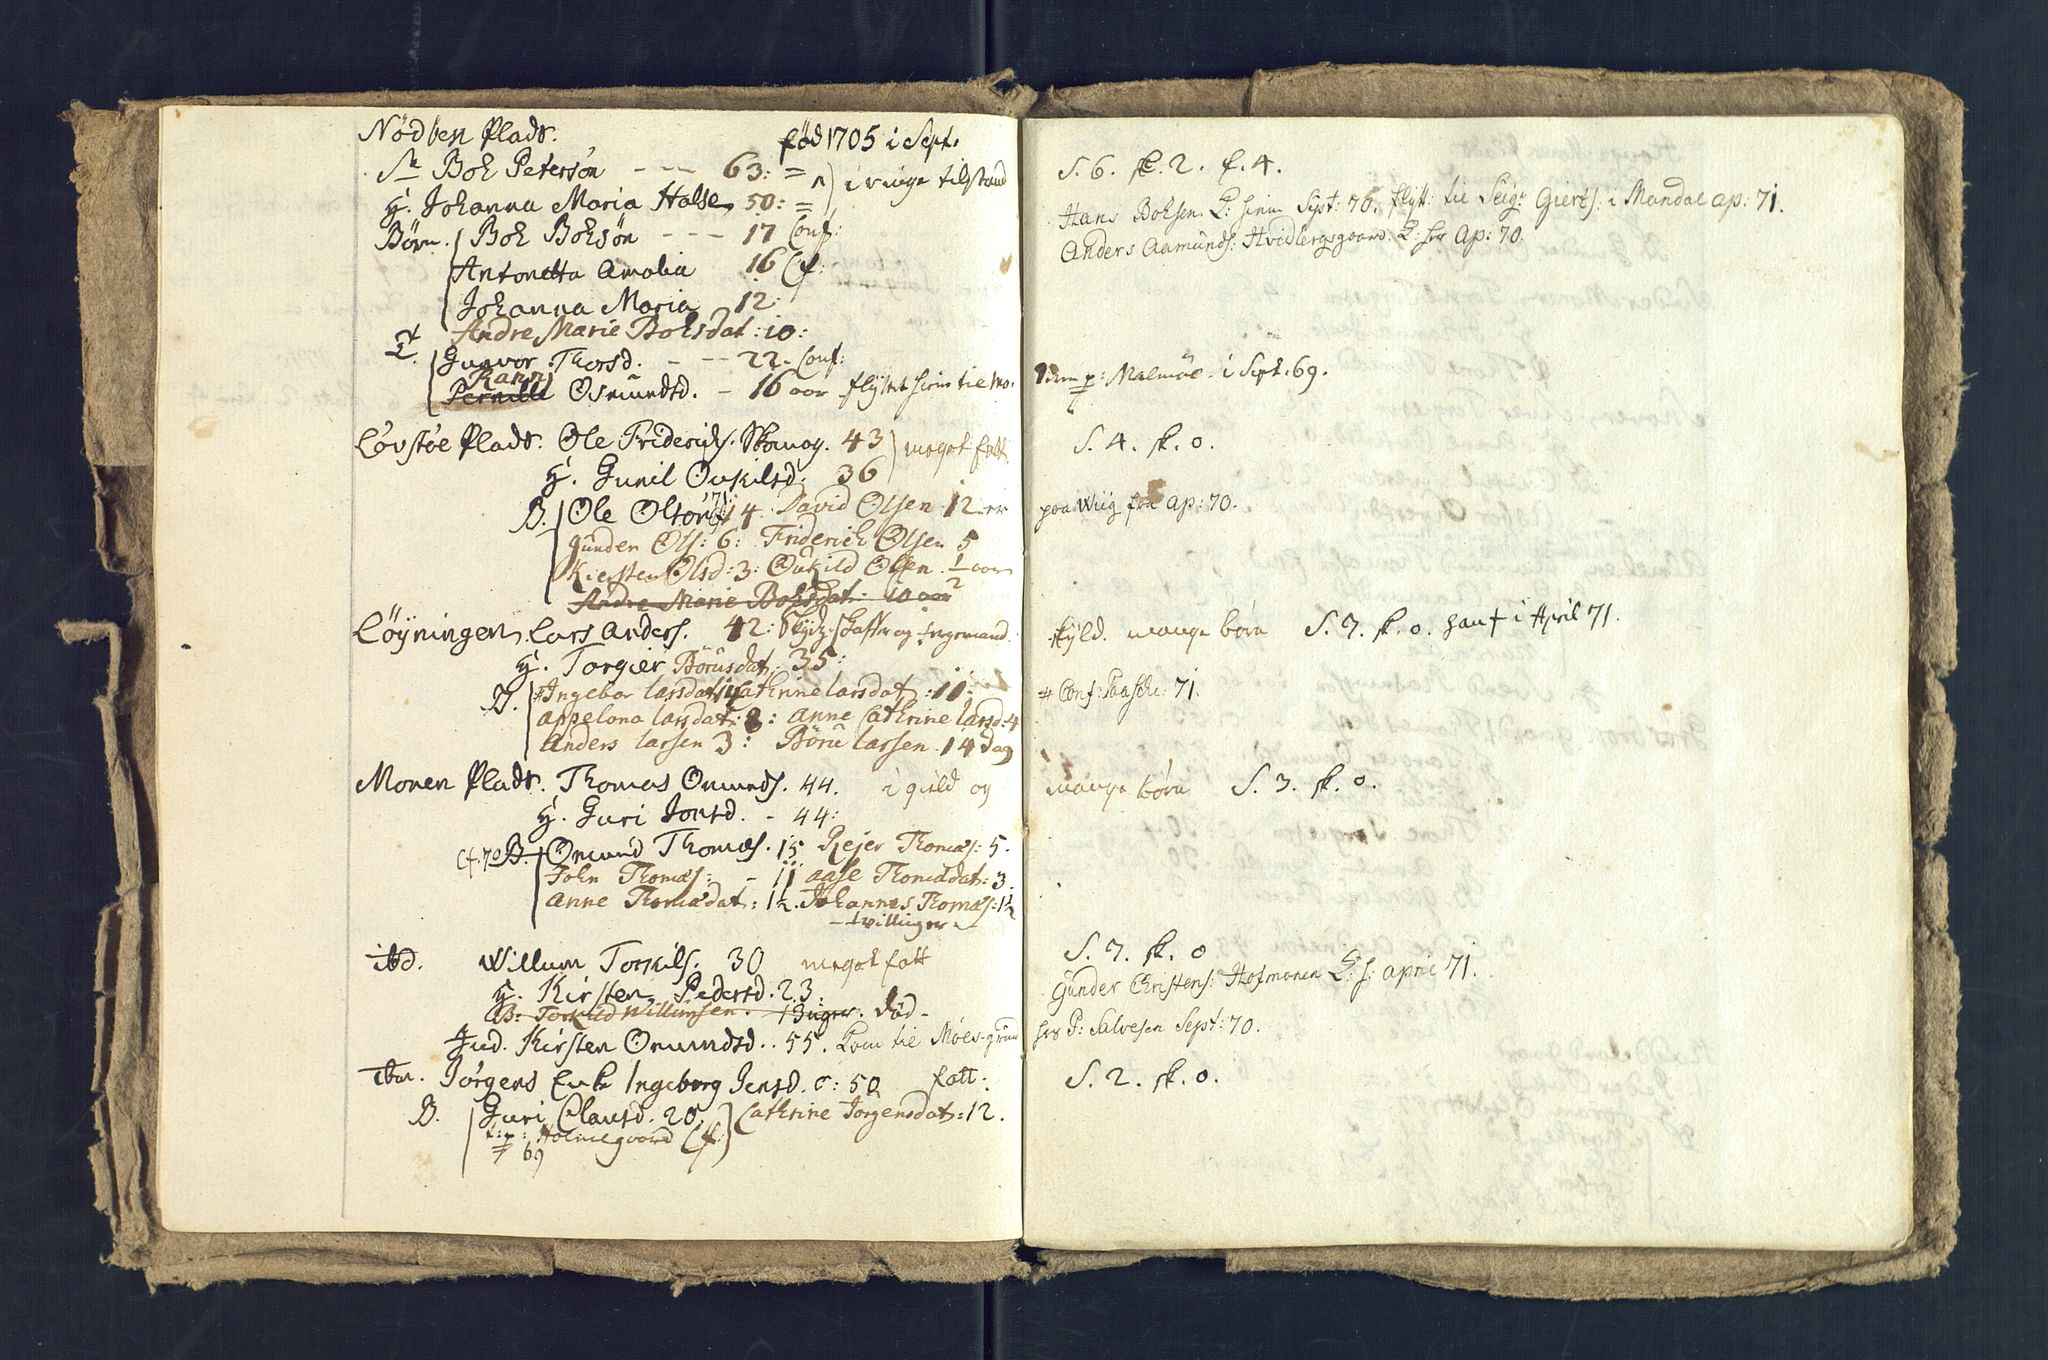 SAK, Holum sokneprestkontor, Andre øvrighetsfunksjoner, no. 5: Census for Holum local parish 1769, 1769-1771, p. 4